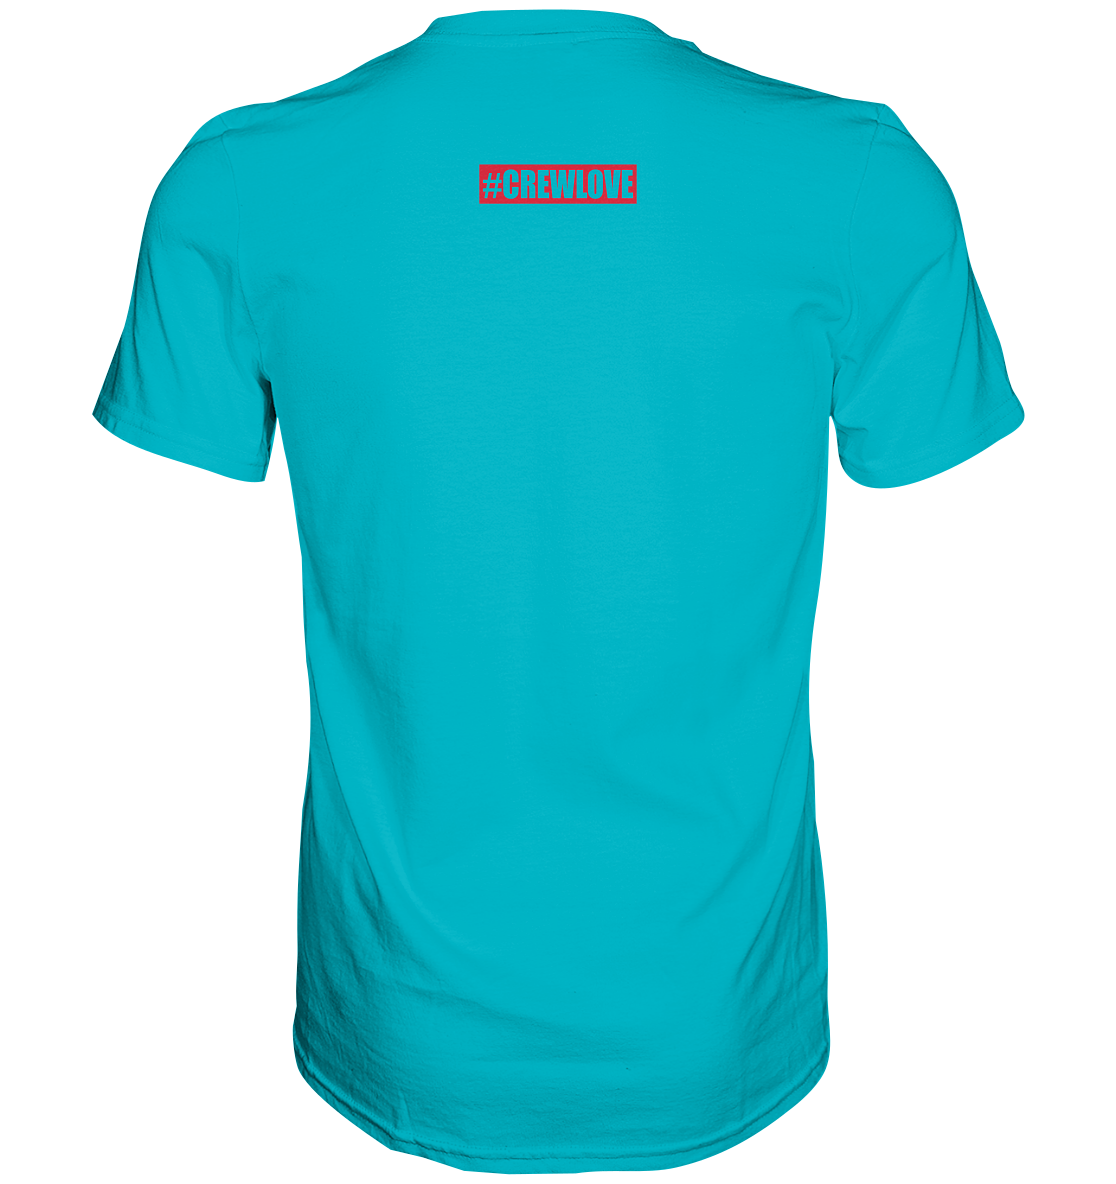 Crewlove, kleiner Backprint - Premium Shirt